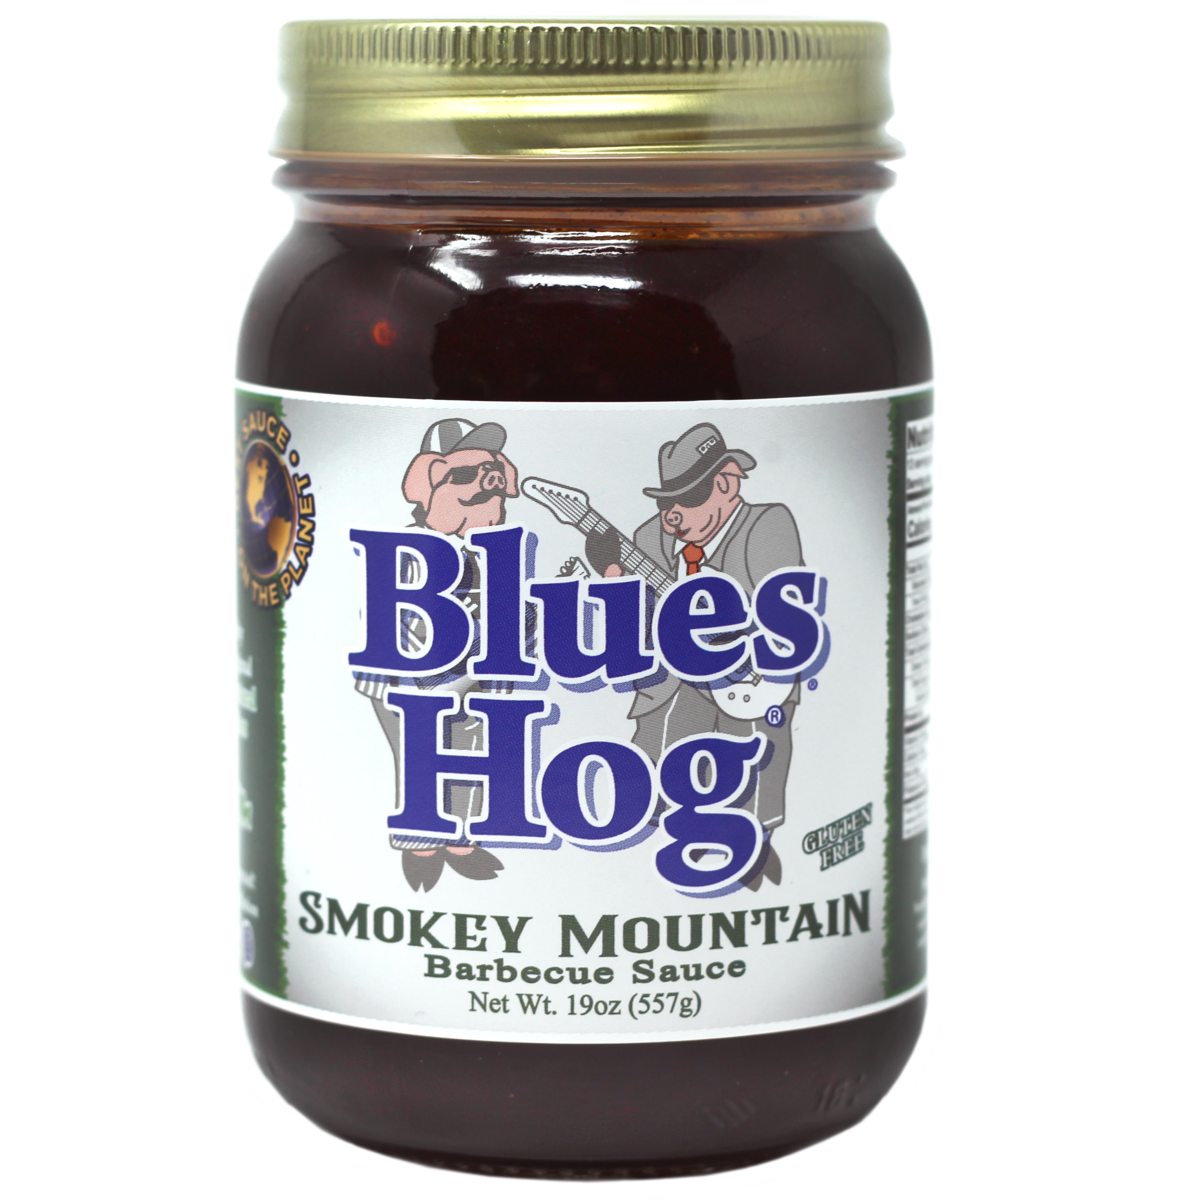 Blues Hog Smokey Mtn